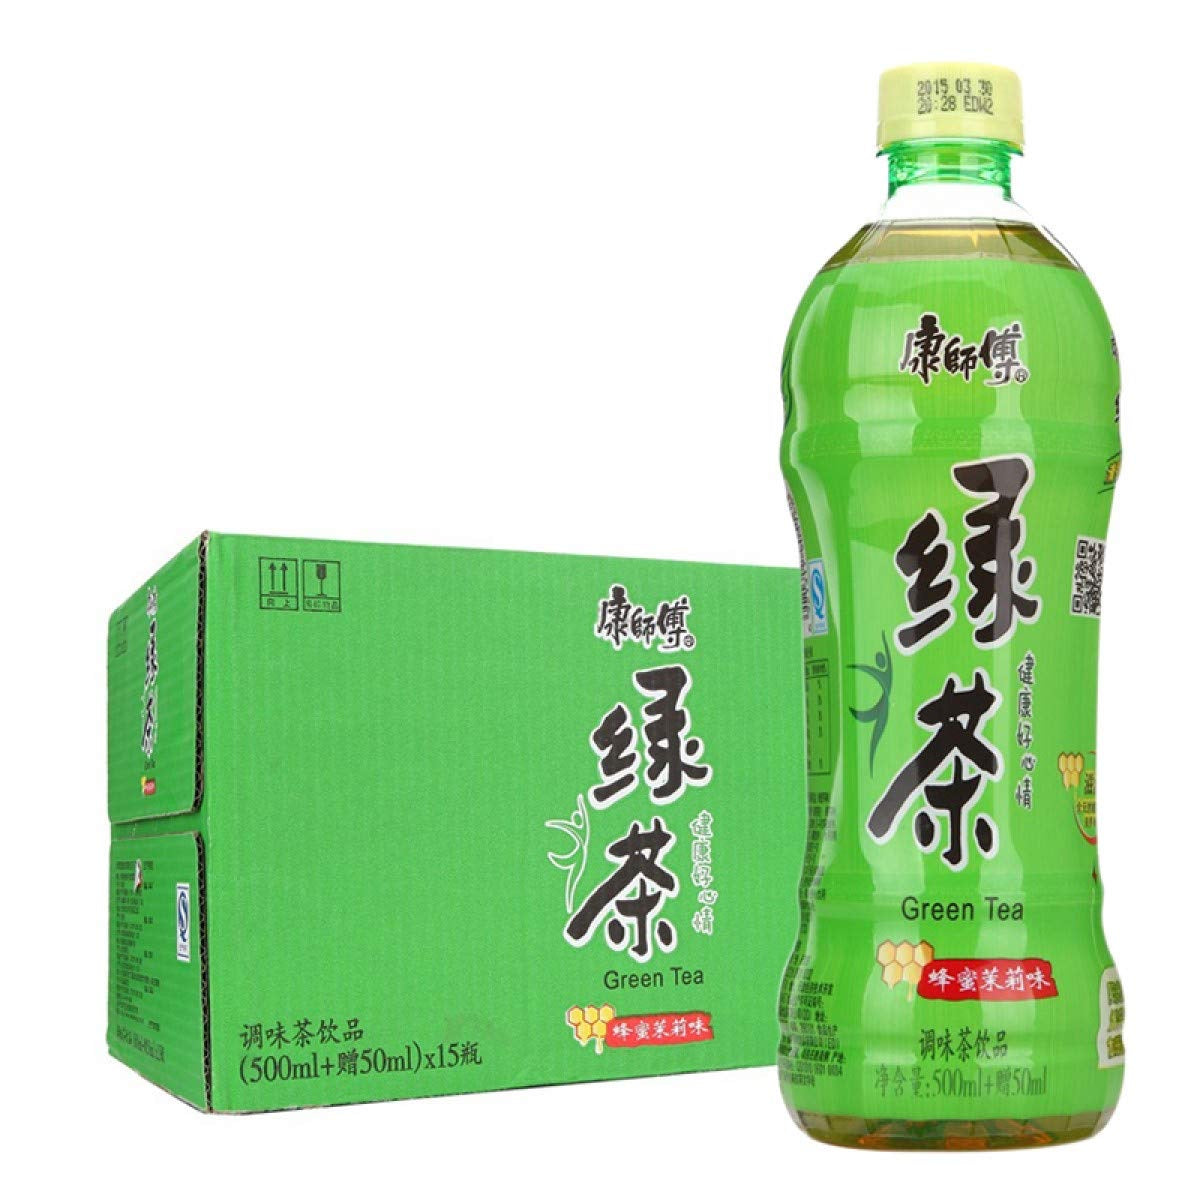 康师傅-绿茶500ml